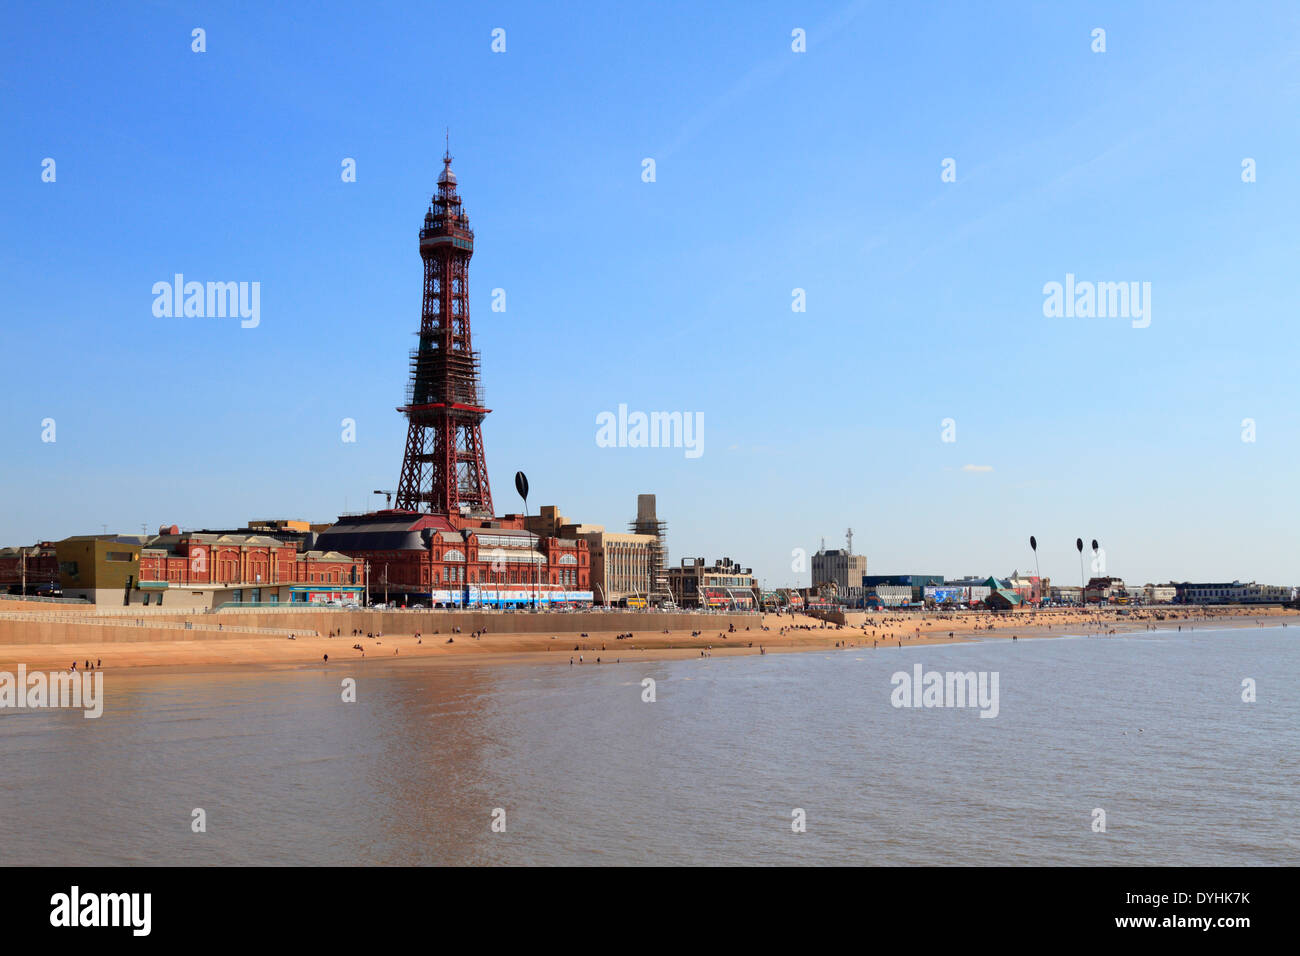 Blackpool Tower, promenade and seafront regeneration, Blackpool,  Lancashire, England, UK. Stock Photo